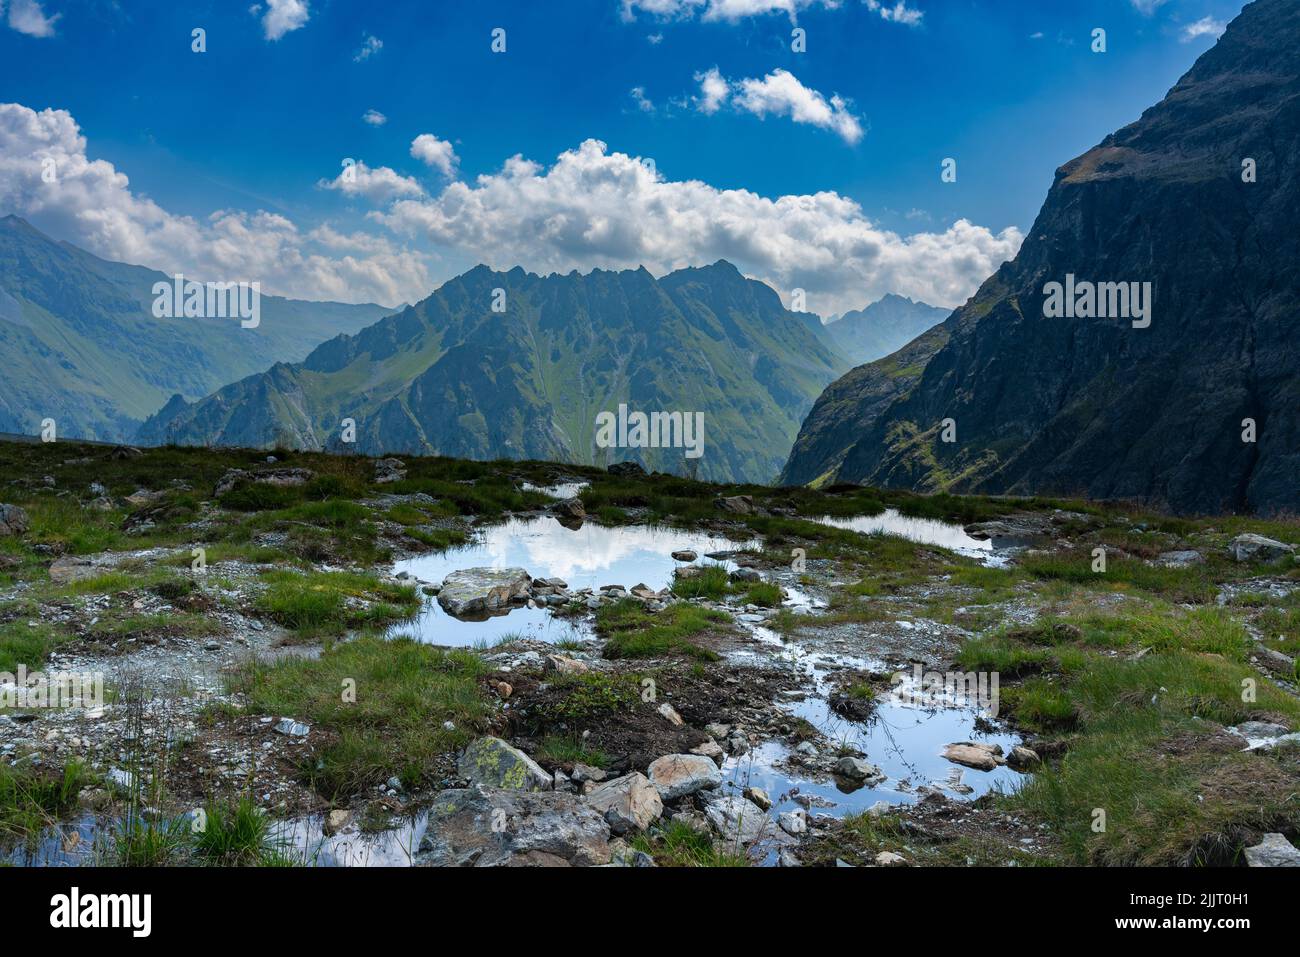 umgeben von Steinen, Gras und Blumen liegt ein kleiner blauer Bergsee am Schafberg über Gargellen, Montafon, Österreich. Berge spiegeln sich im Wasser Stock Photo